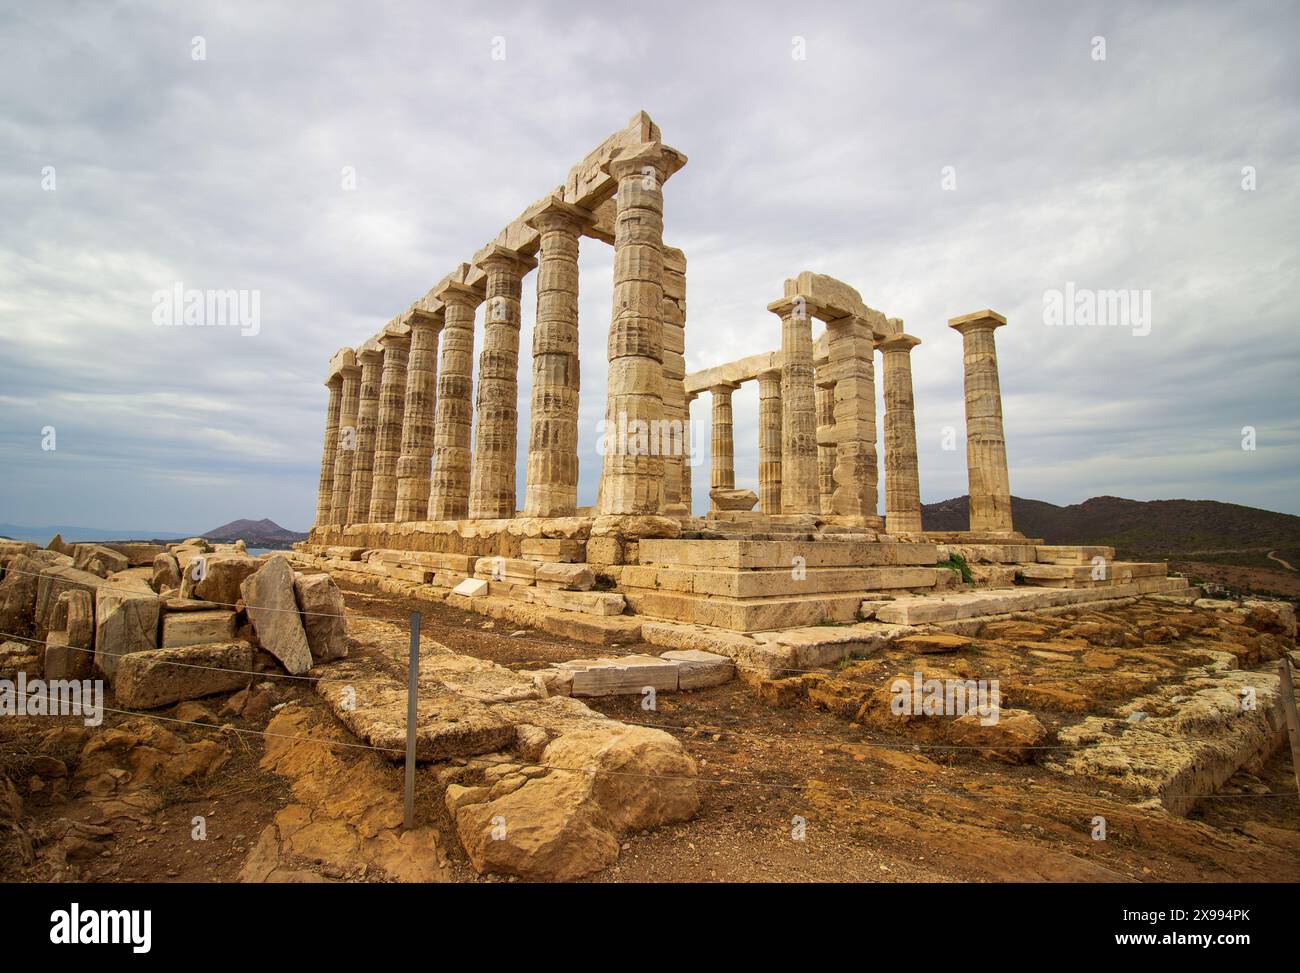 Ruines du temple grec antique ciel nuageux avec des paysages spectaculaires et des restes de colonnes Banque D'Images